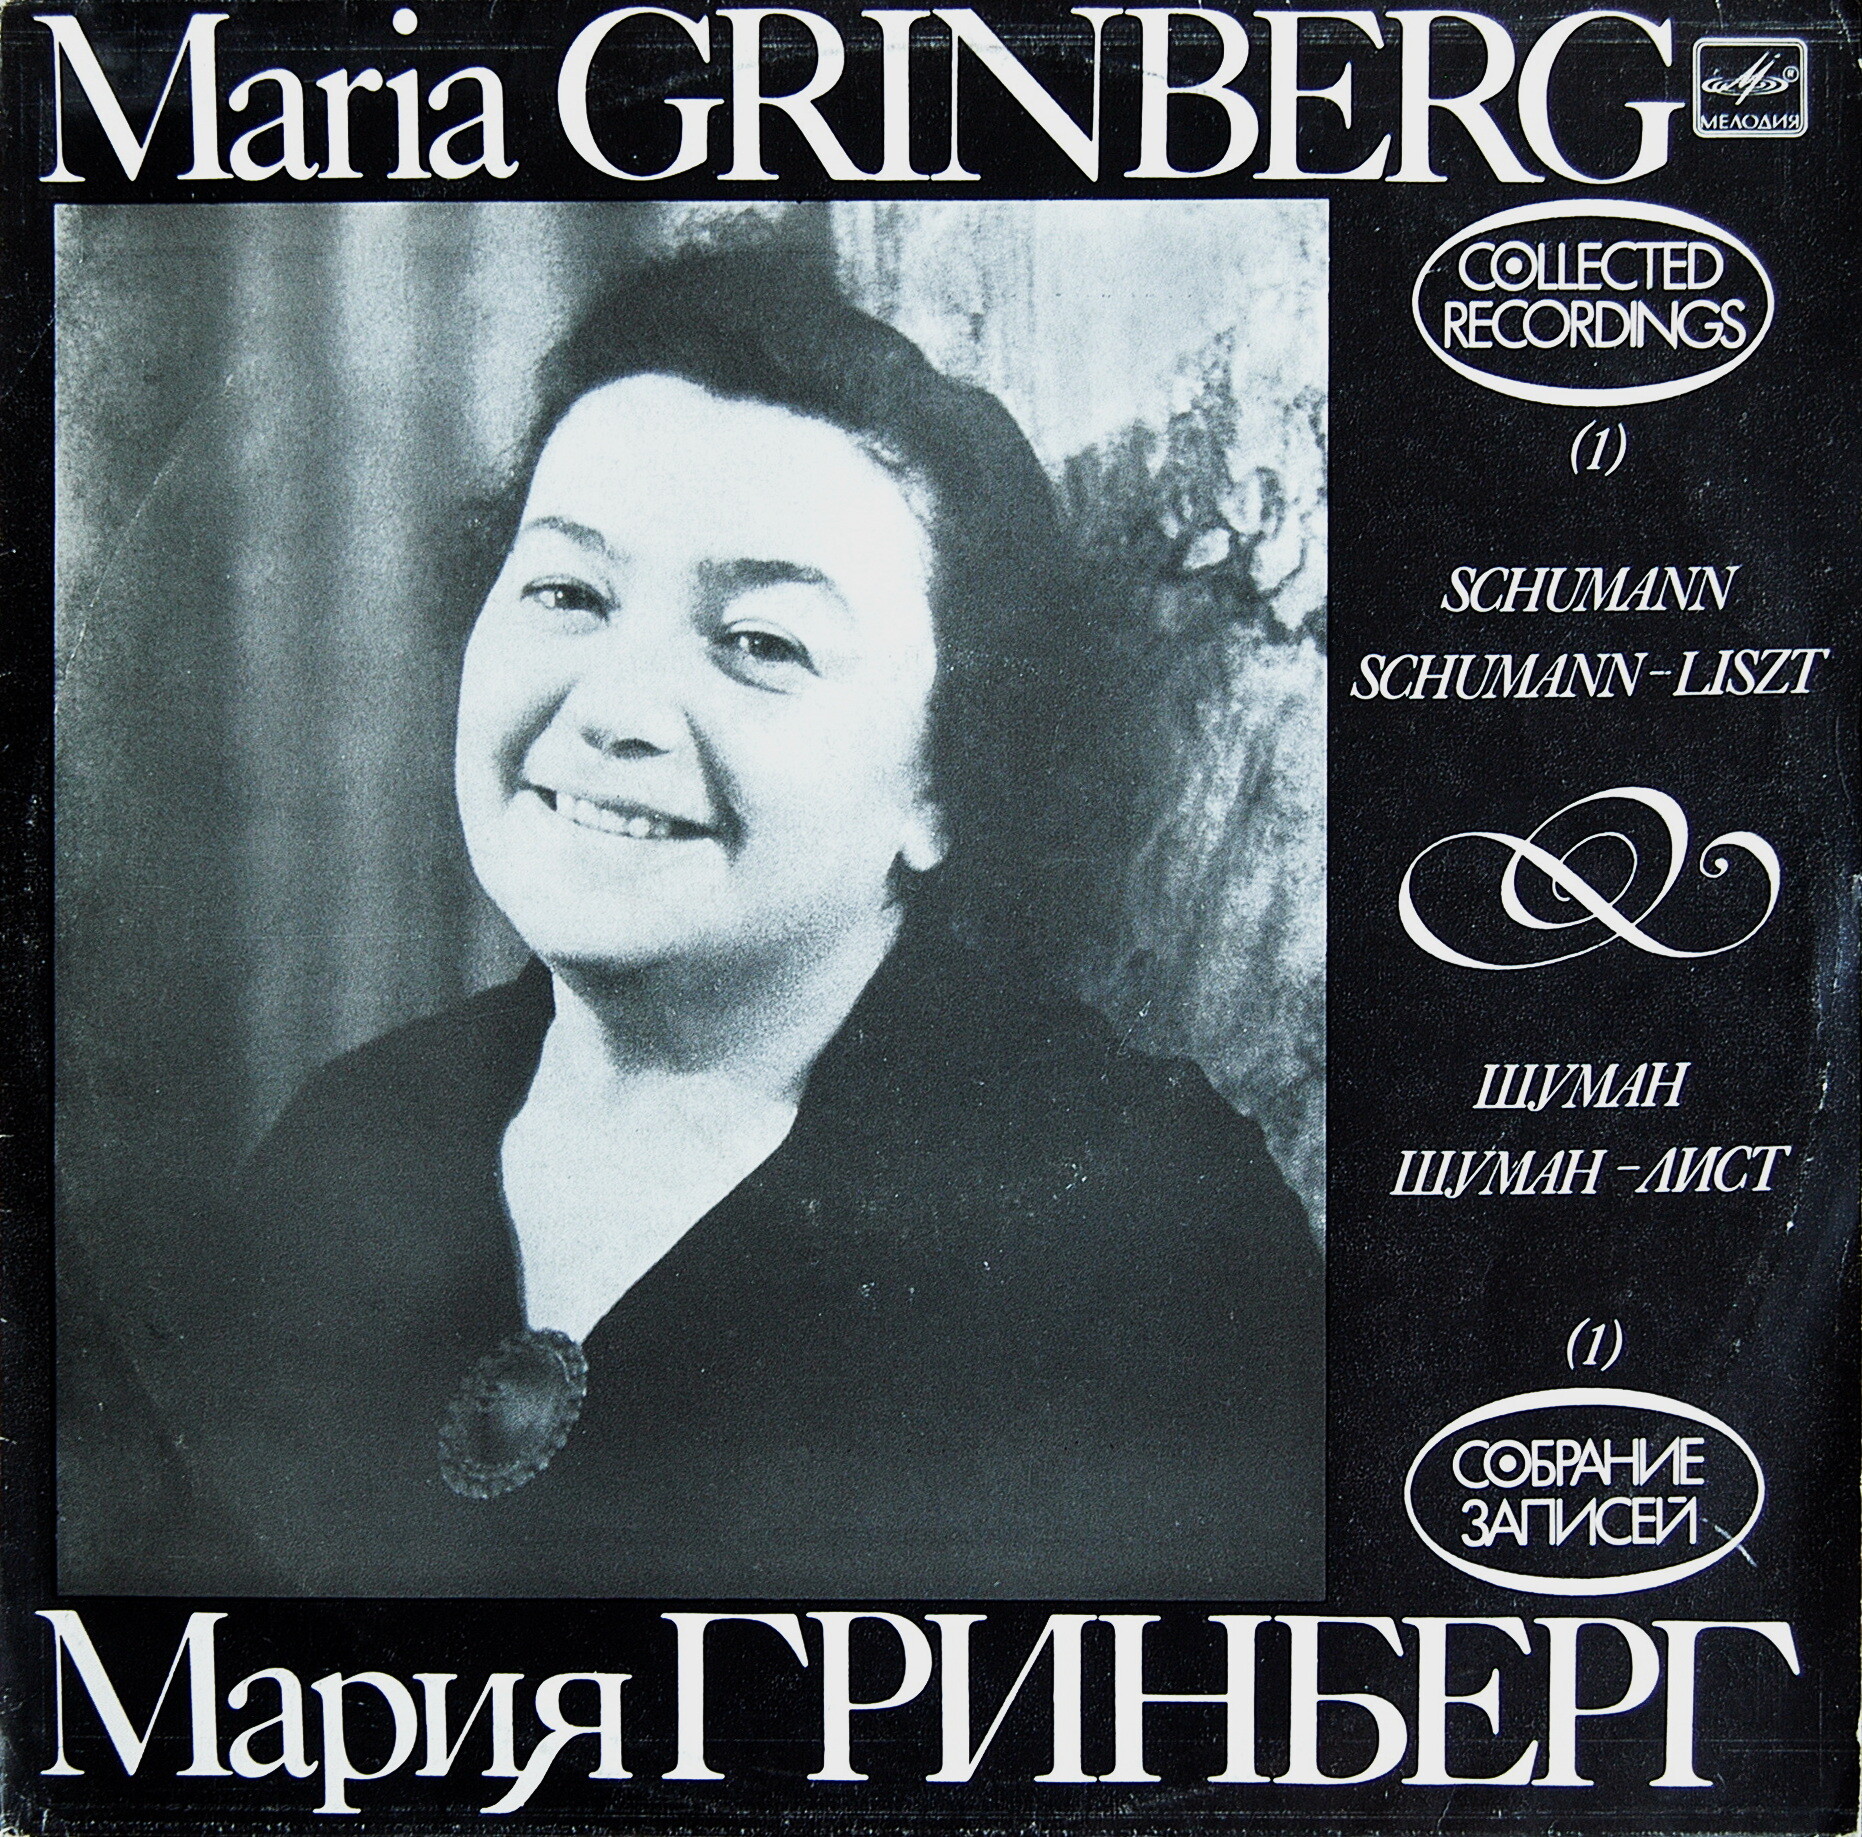 Мария ГРИНБЕРГ (ф-но). Собрание записей (1)